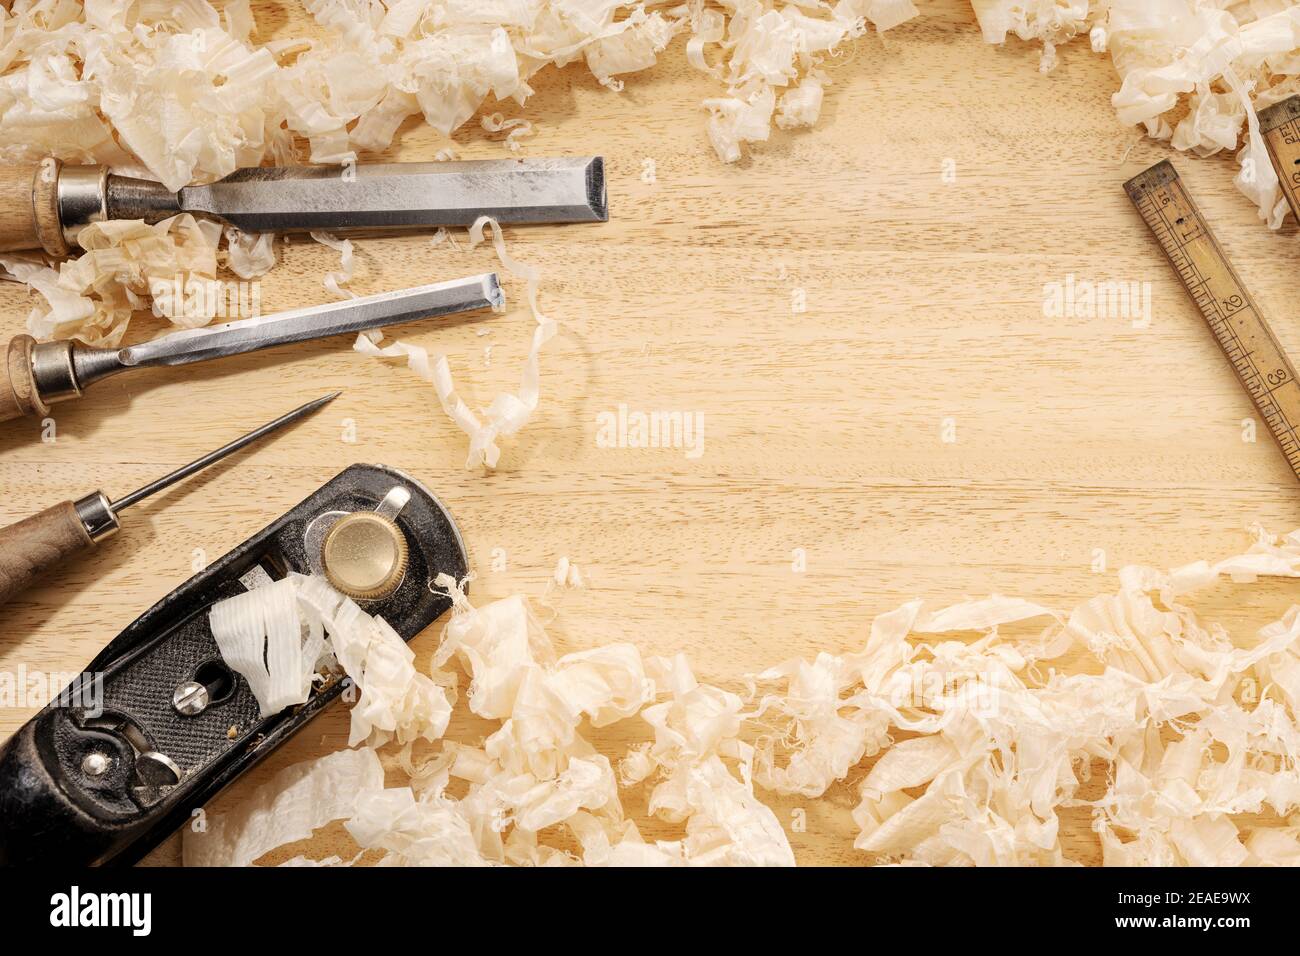 Schreinerei oder Holzbearbeitung Hintergrund mit Kopierraum. Alte Schreinerei Werkzeuge und Holzspäne auf einer Werkbank. Holzbearbeitung, Handwerk und Handarbeit con Stockfoto